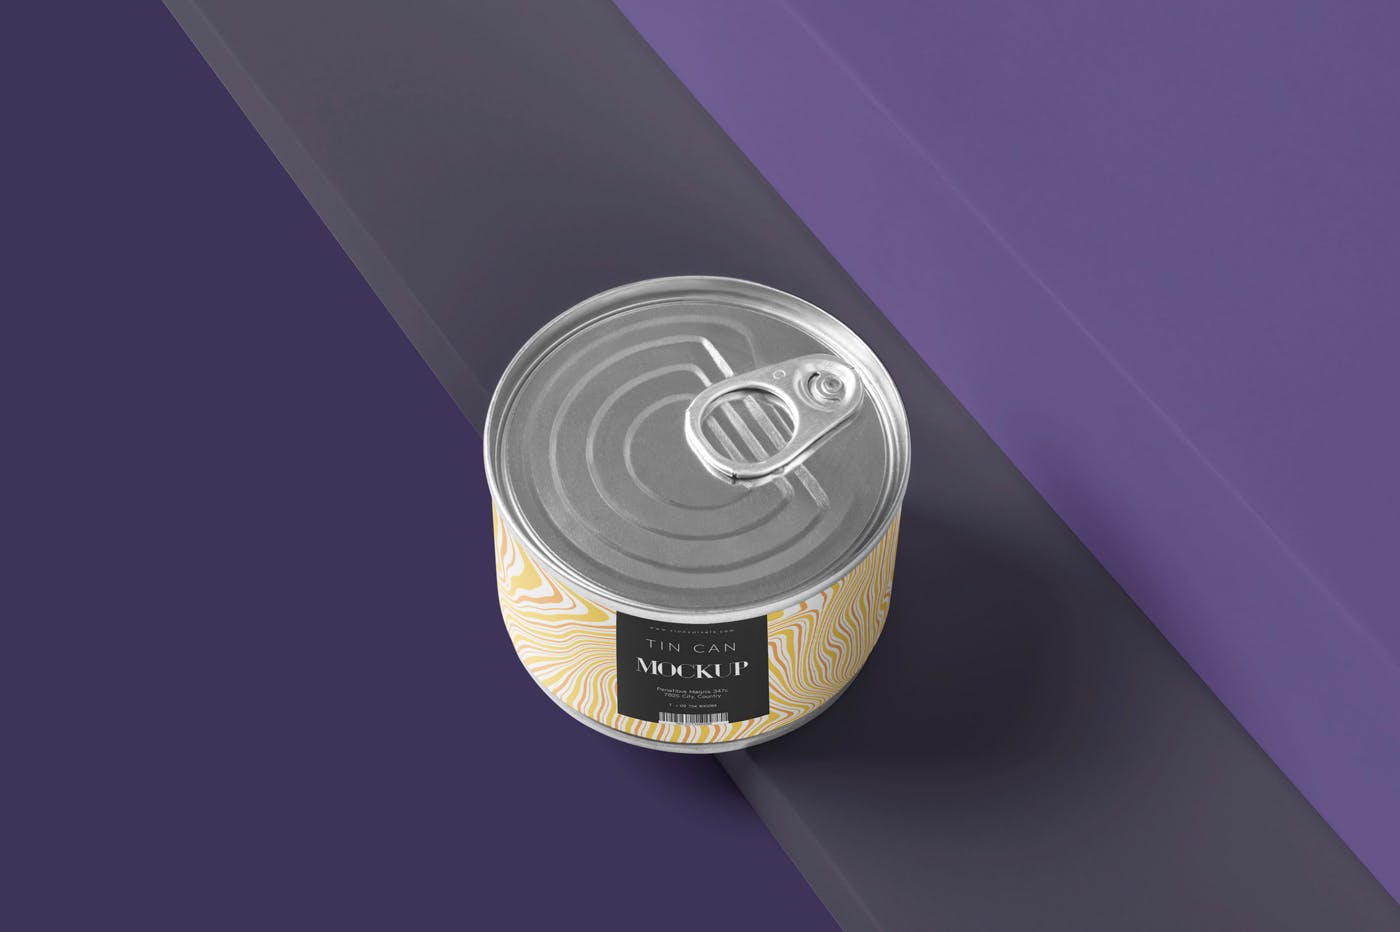 食品罐头外观设计效果图样机PSD模板 Small Food Tin Can Mockups插图(4)